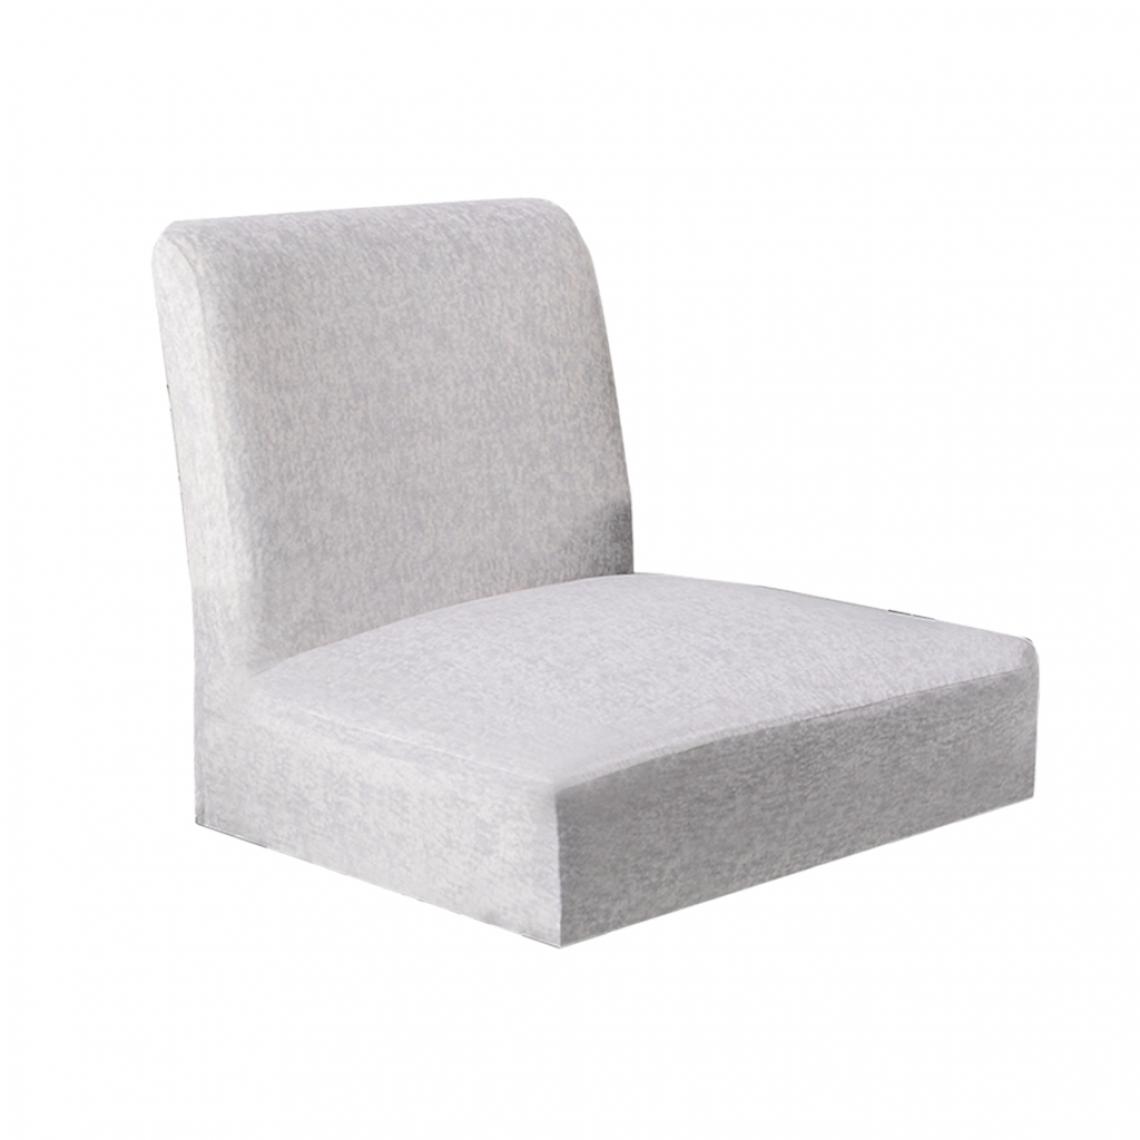 marque generique - housse de chaise stretch housses de chaise pour dossier bas chaise de bar tabouret chaise violet - Tiroir coulissant